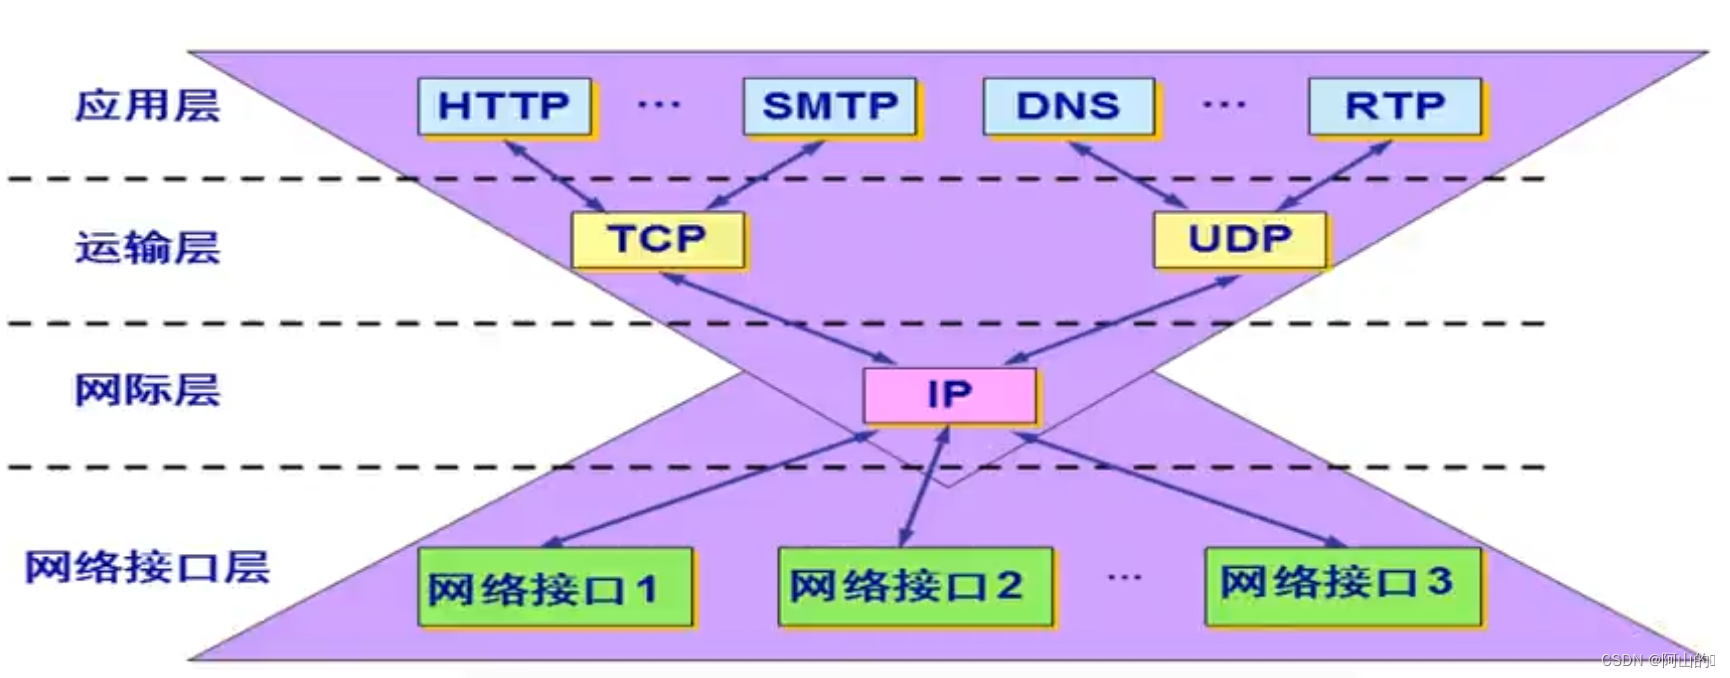 沙漏计时器形状的TCP/IP 协议族